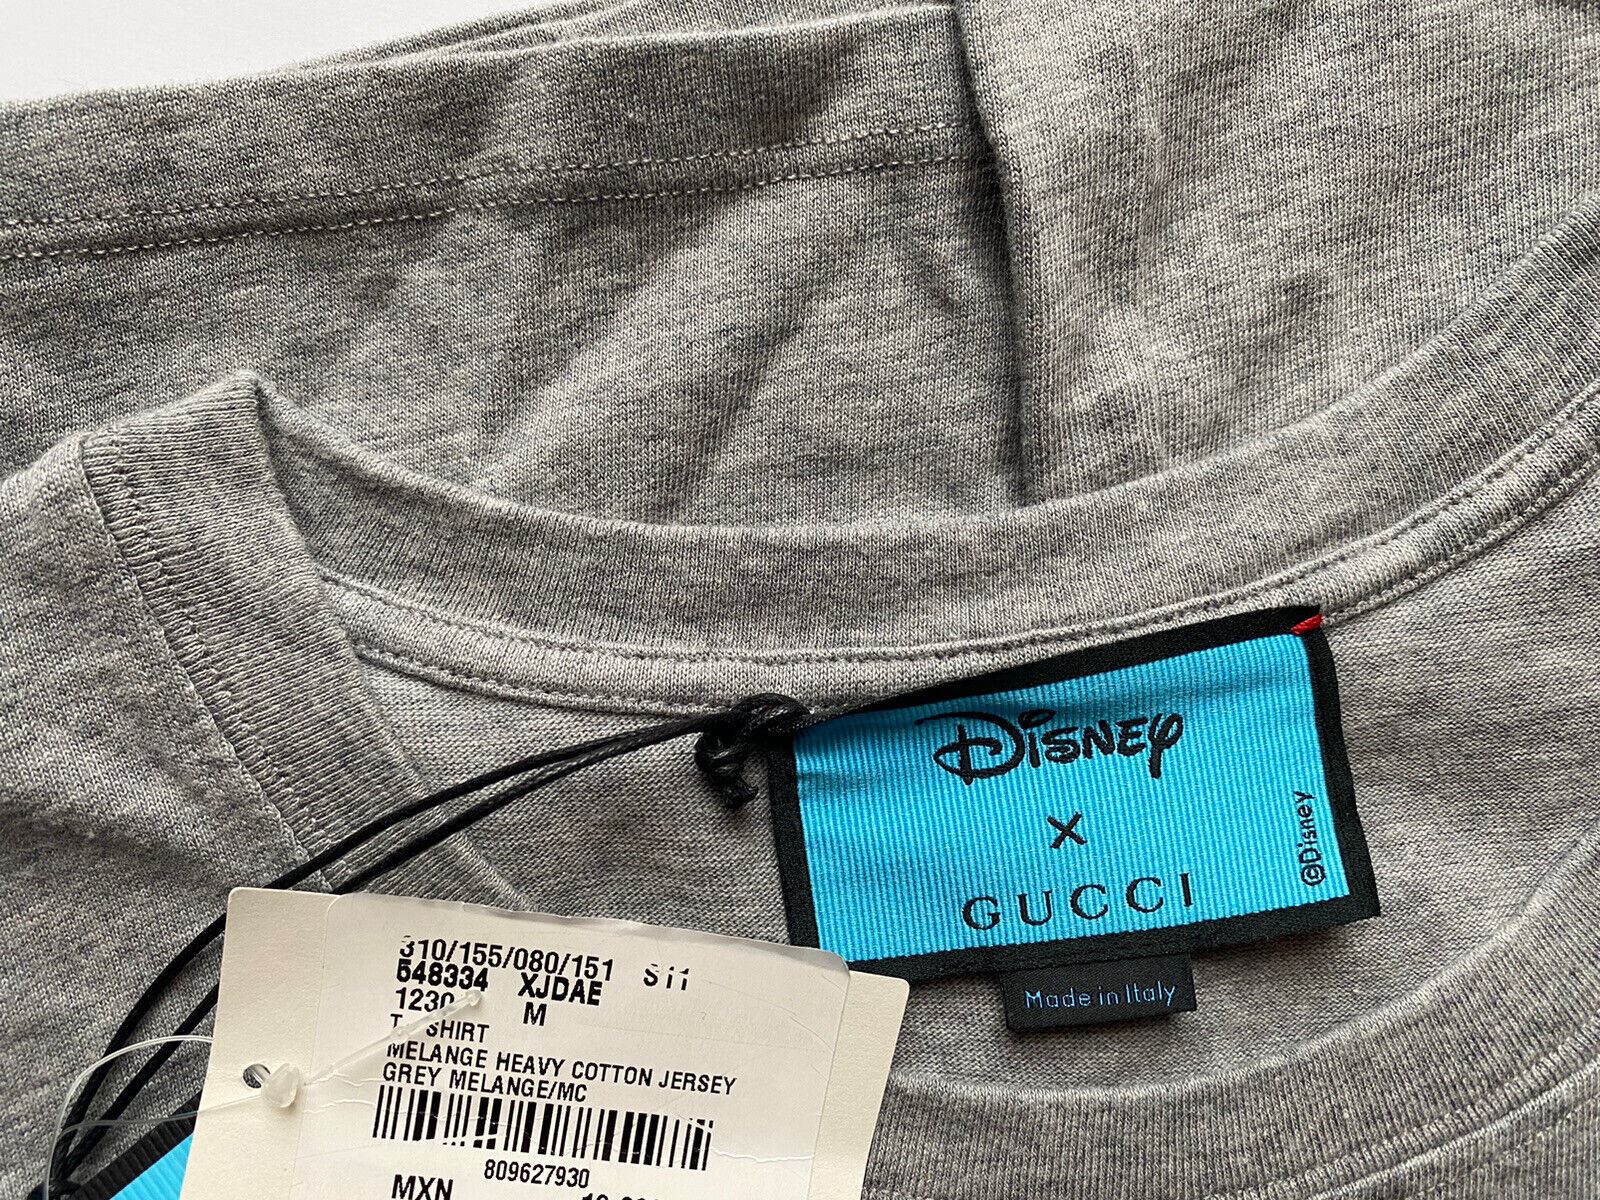 NWT Gucci Donald Duck Flash Disney Серая трикотажная футболка M (оверсайз) 548334